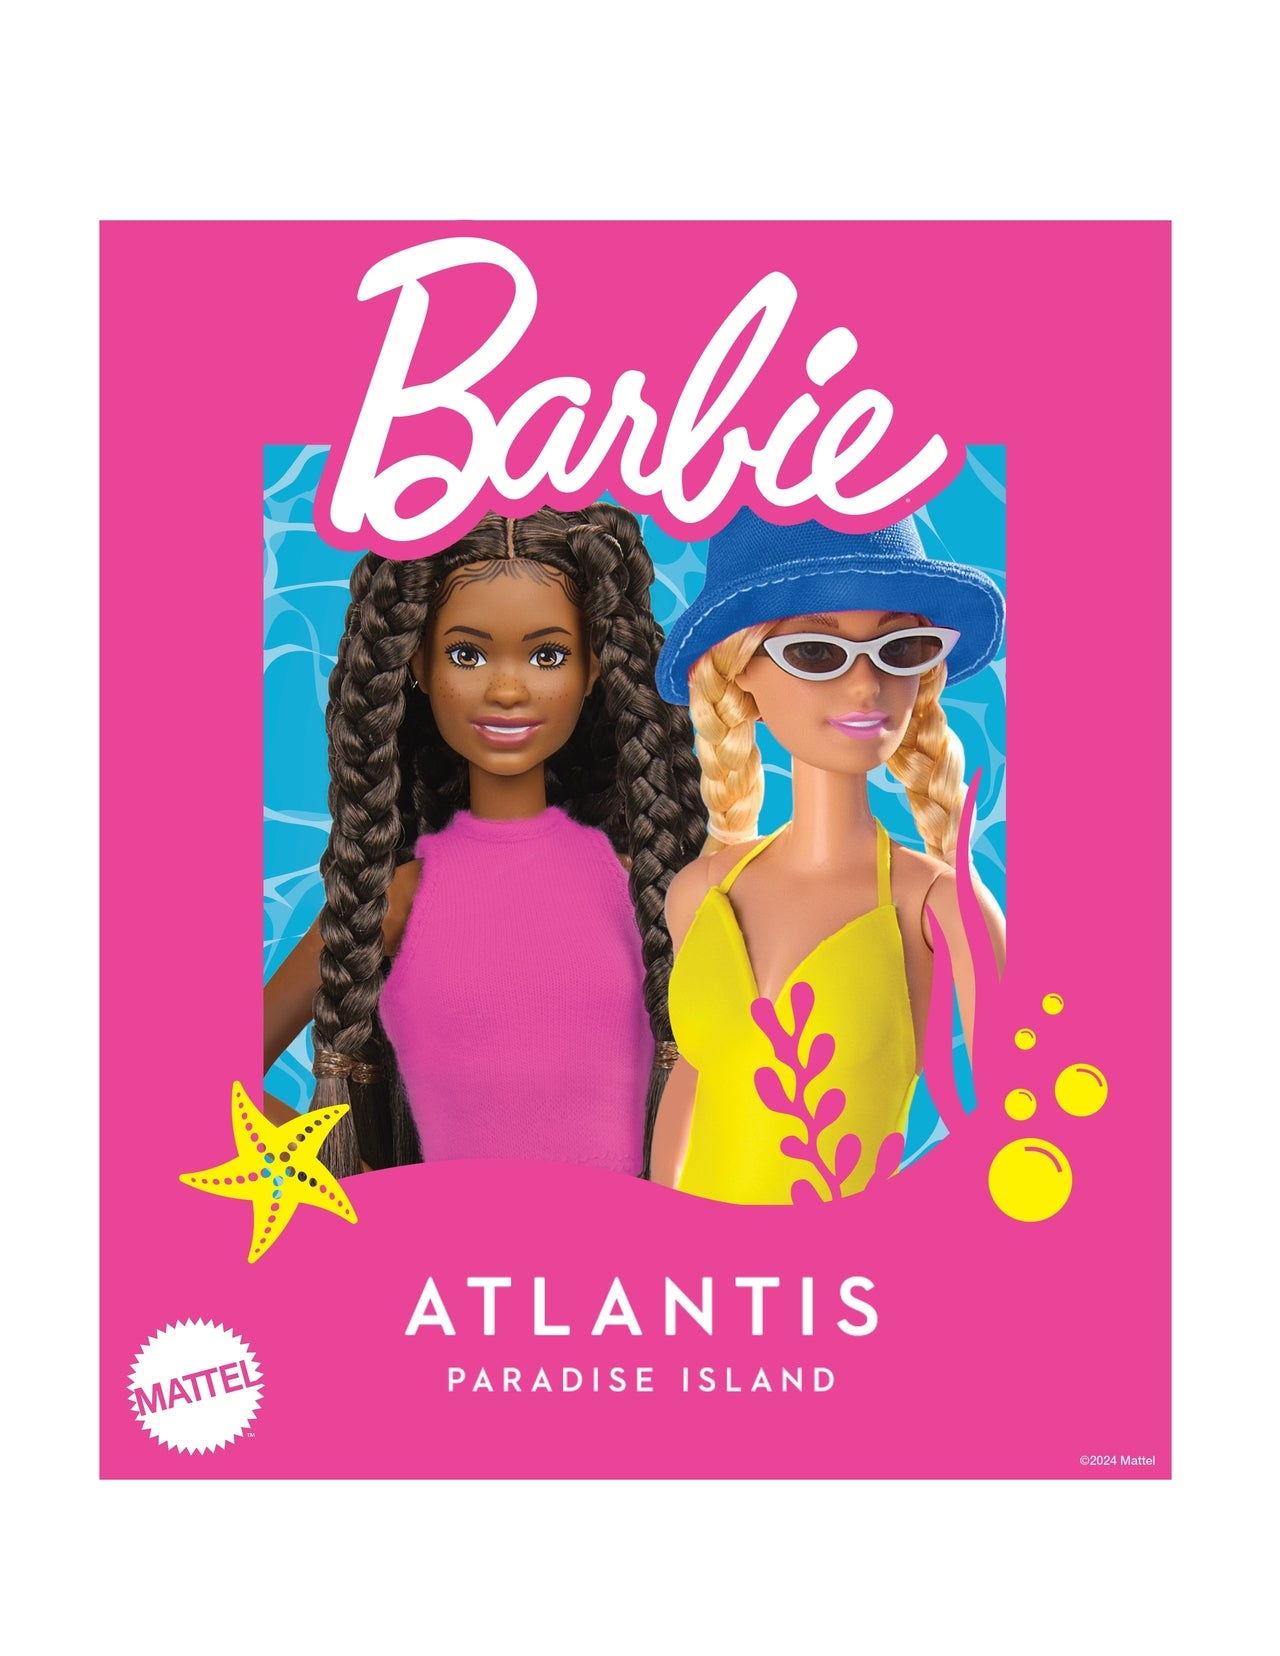 Barbie arrive aux Bahamas